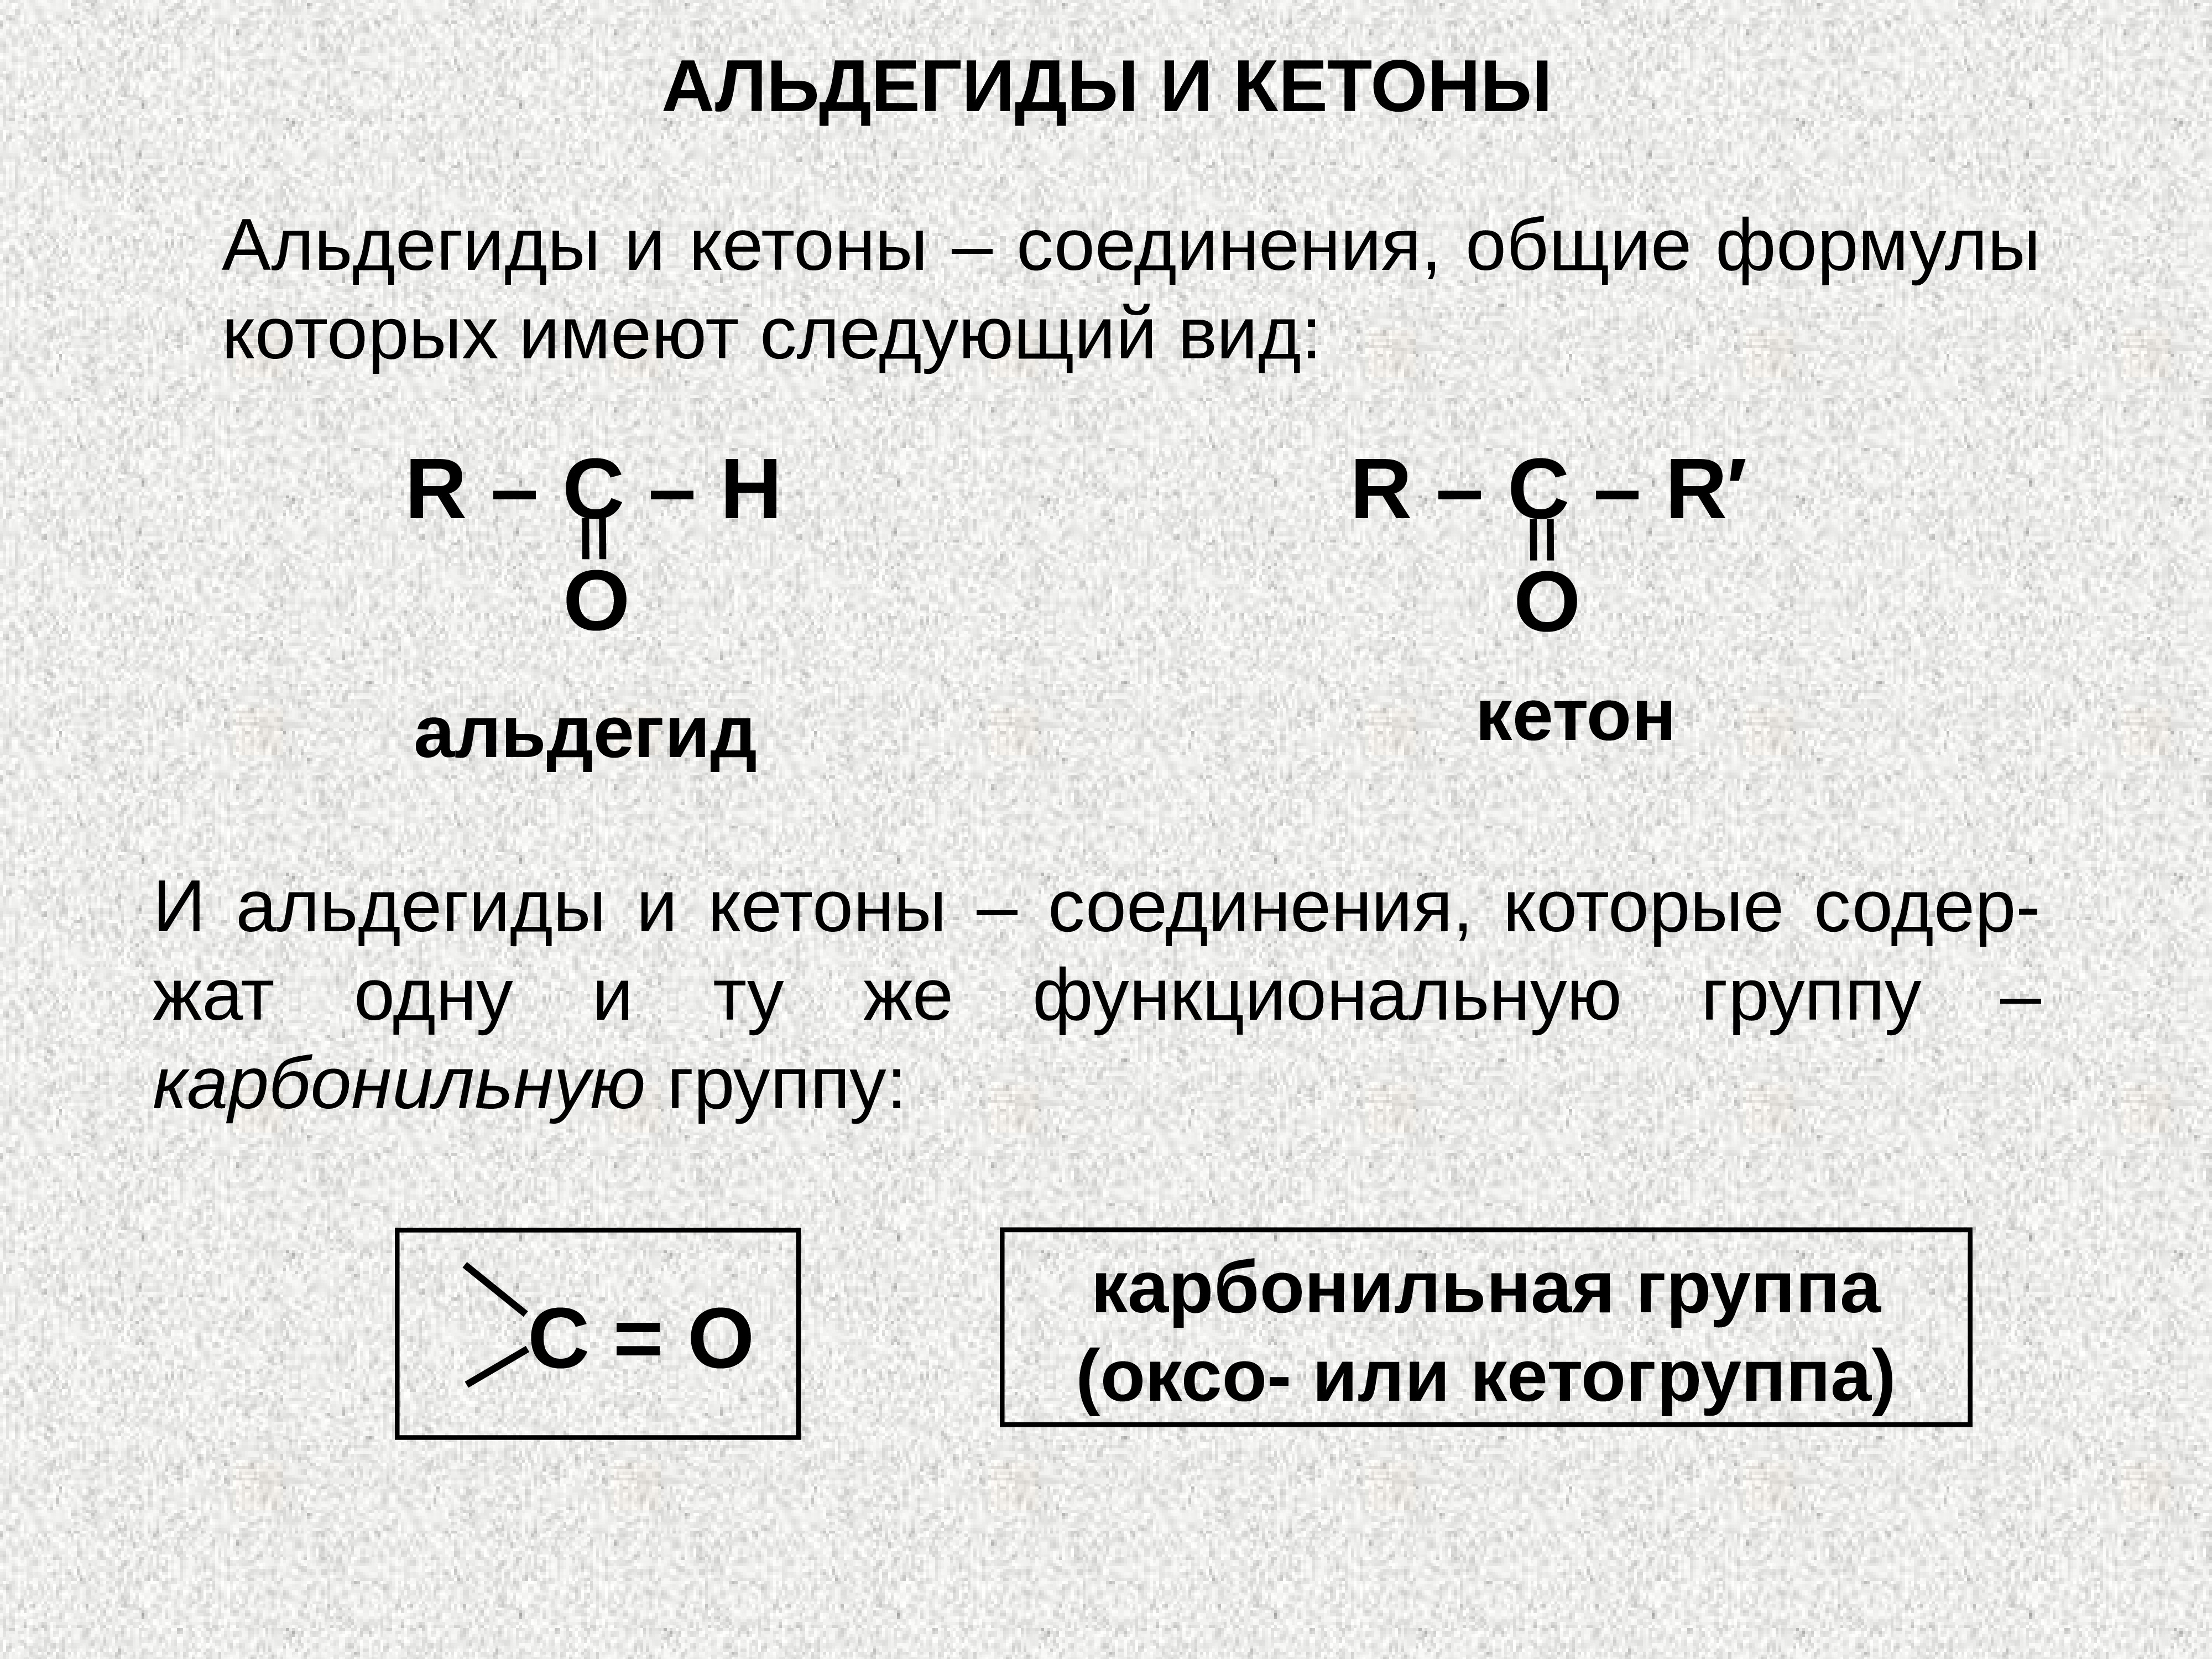 Кетоны названия соединений. Карбонильная группа альдегидов. Какова общая формула альдегидов и кетонов. Карбонильная группа в альдегидах и кетонах. Альдегиды конспект по химии 10 класс.